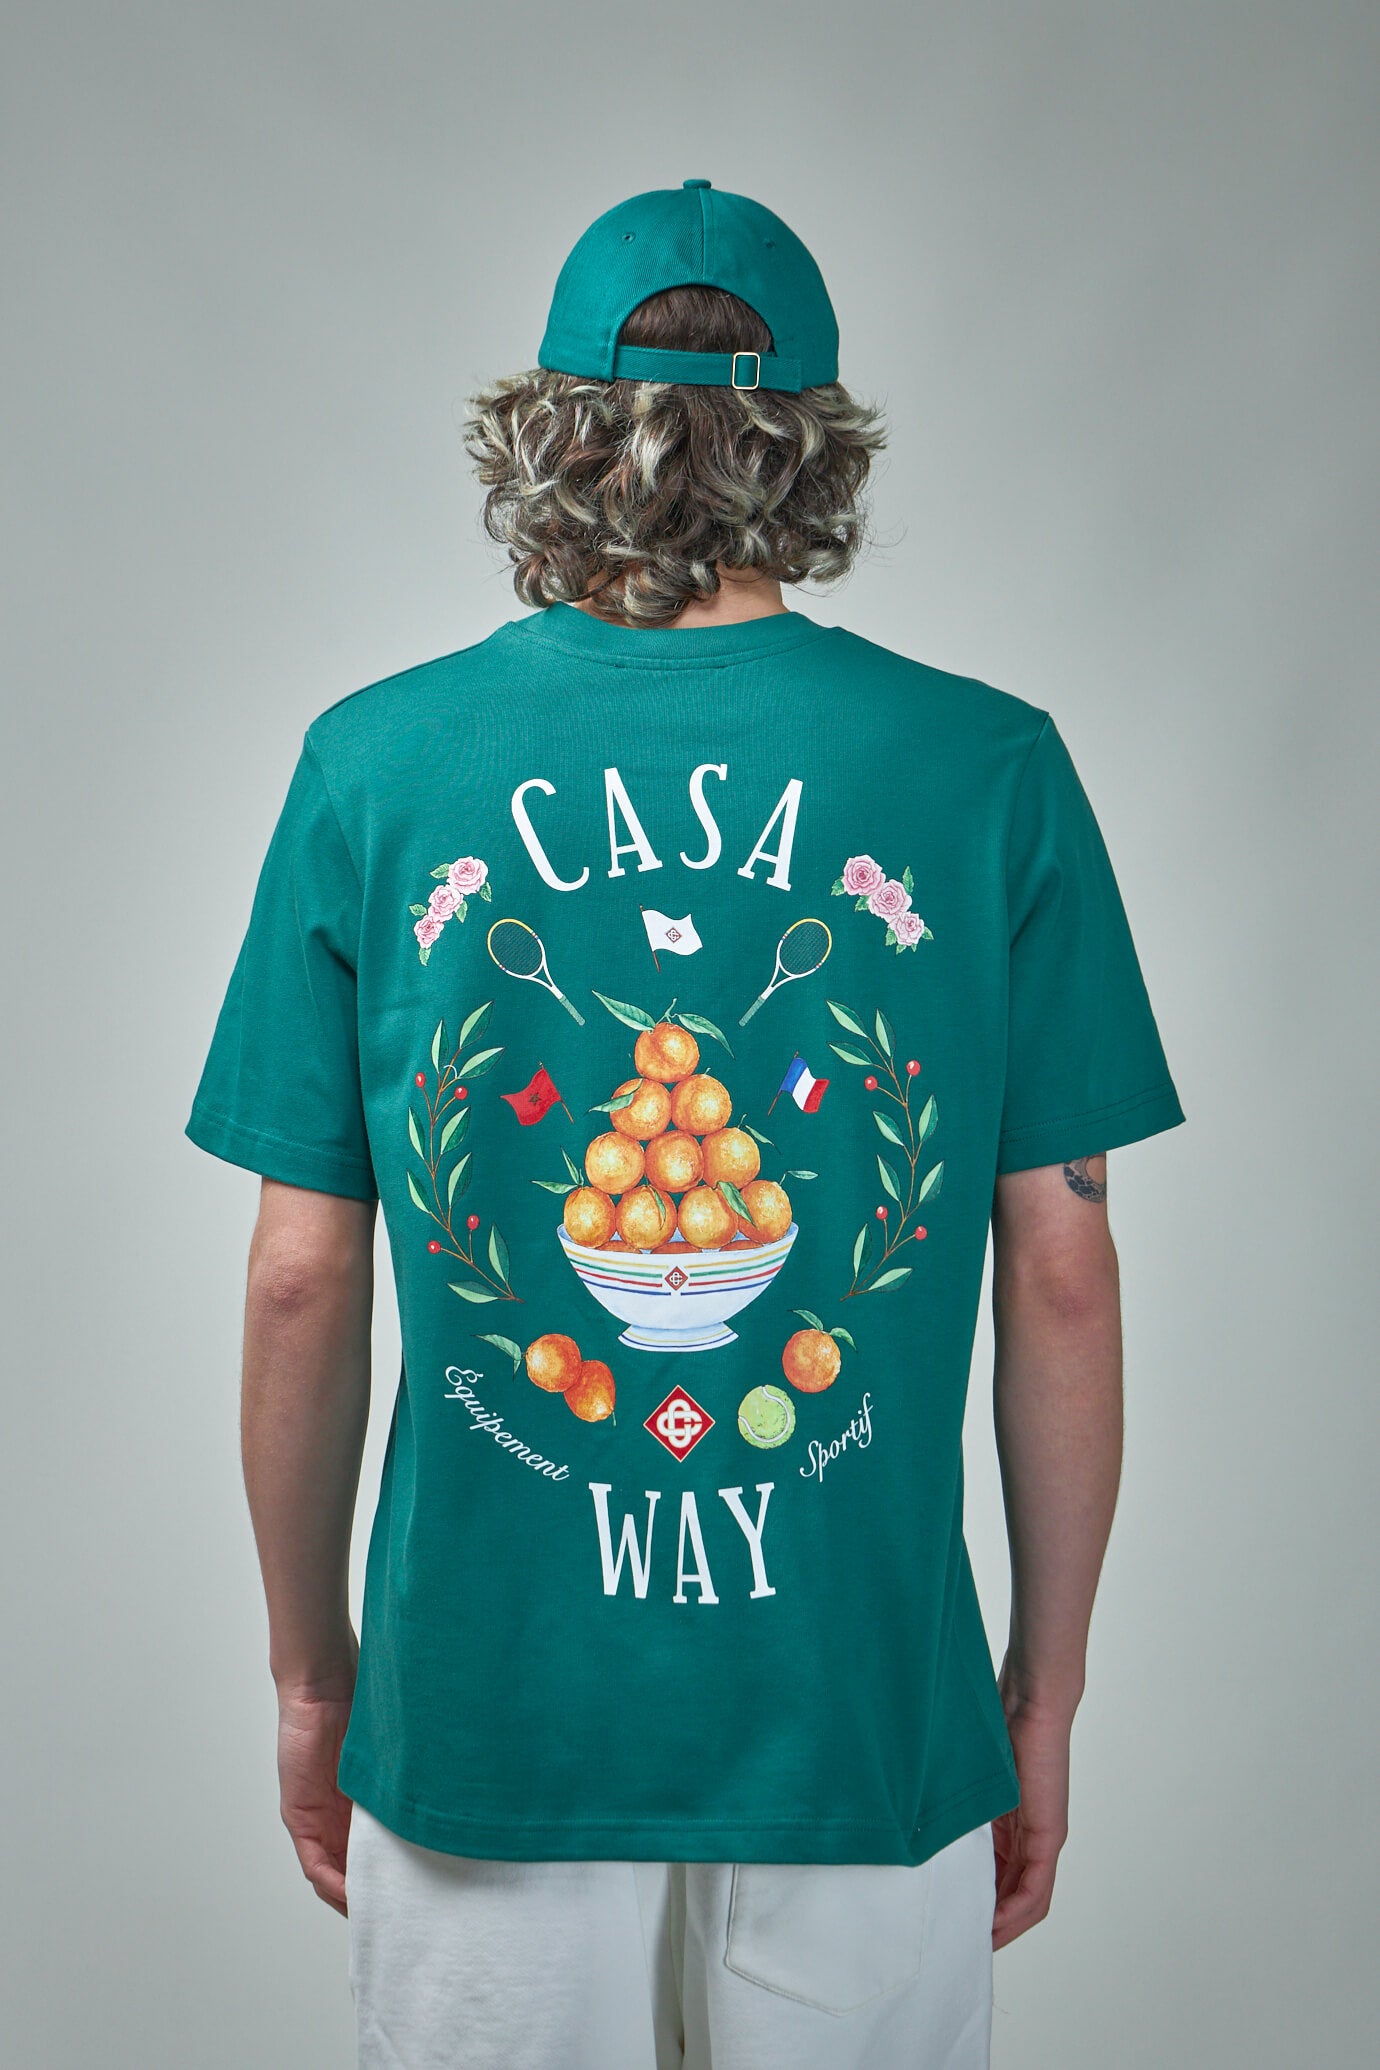 Casa Way Printed T-Shirt